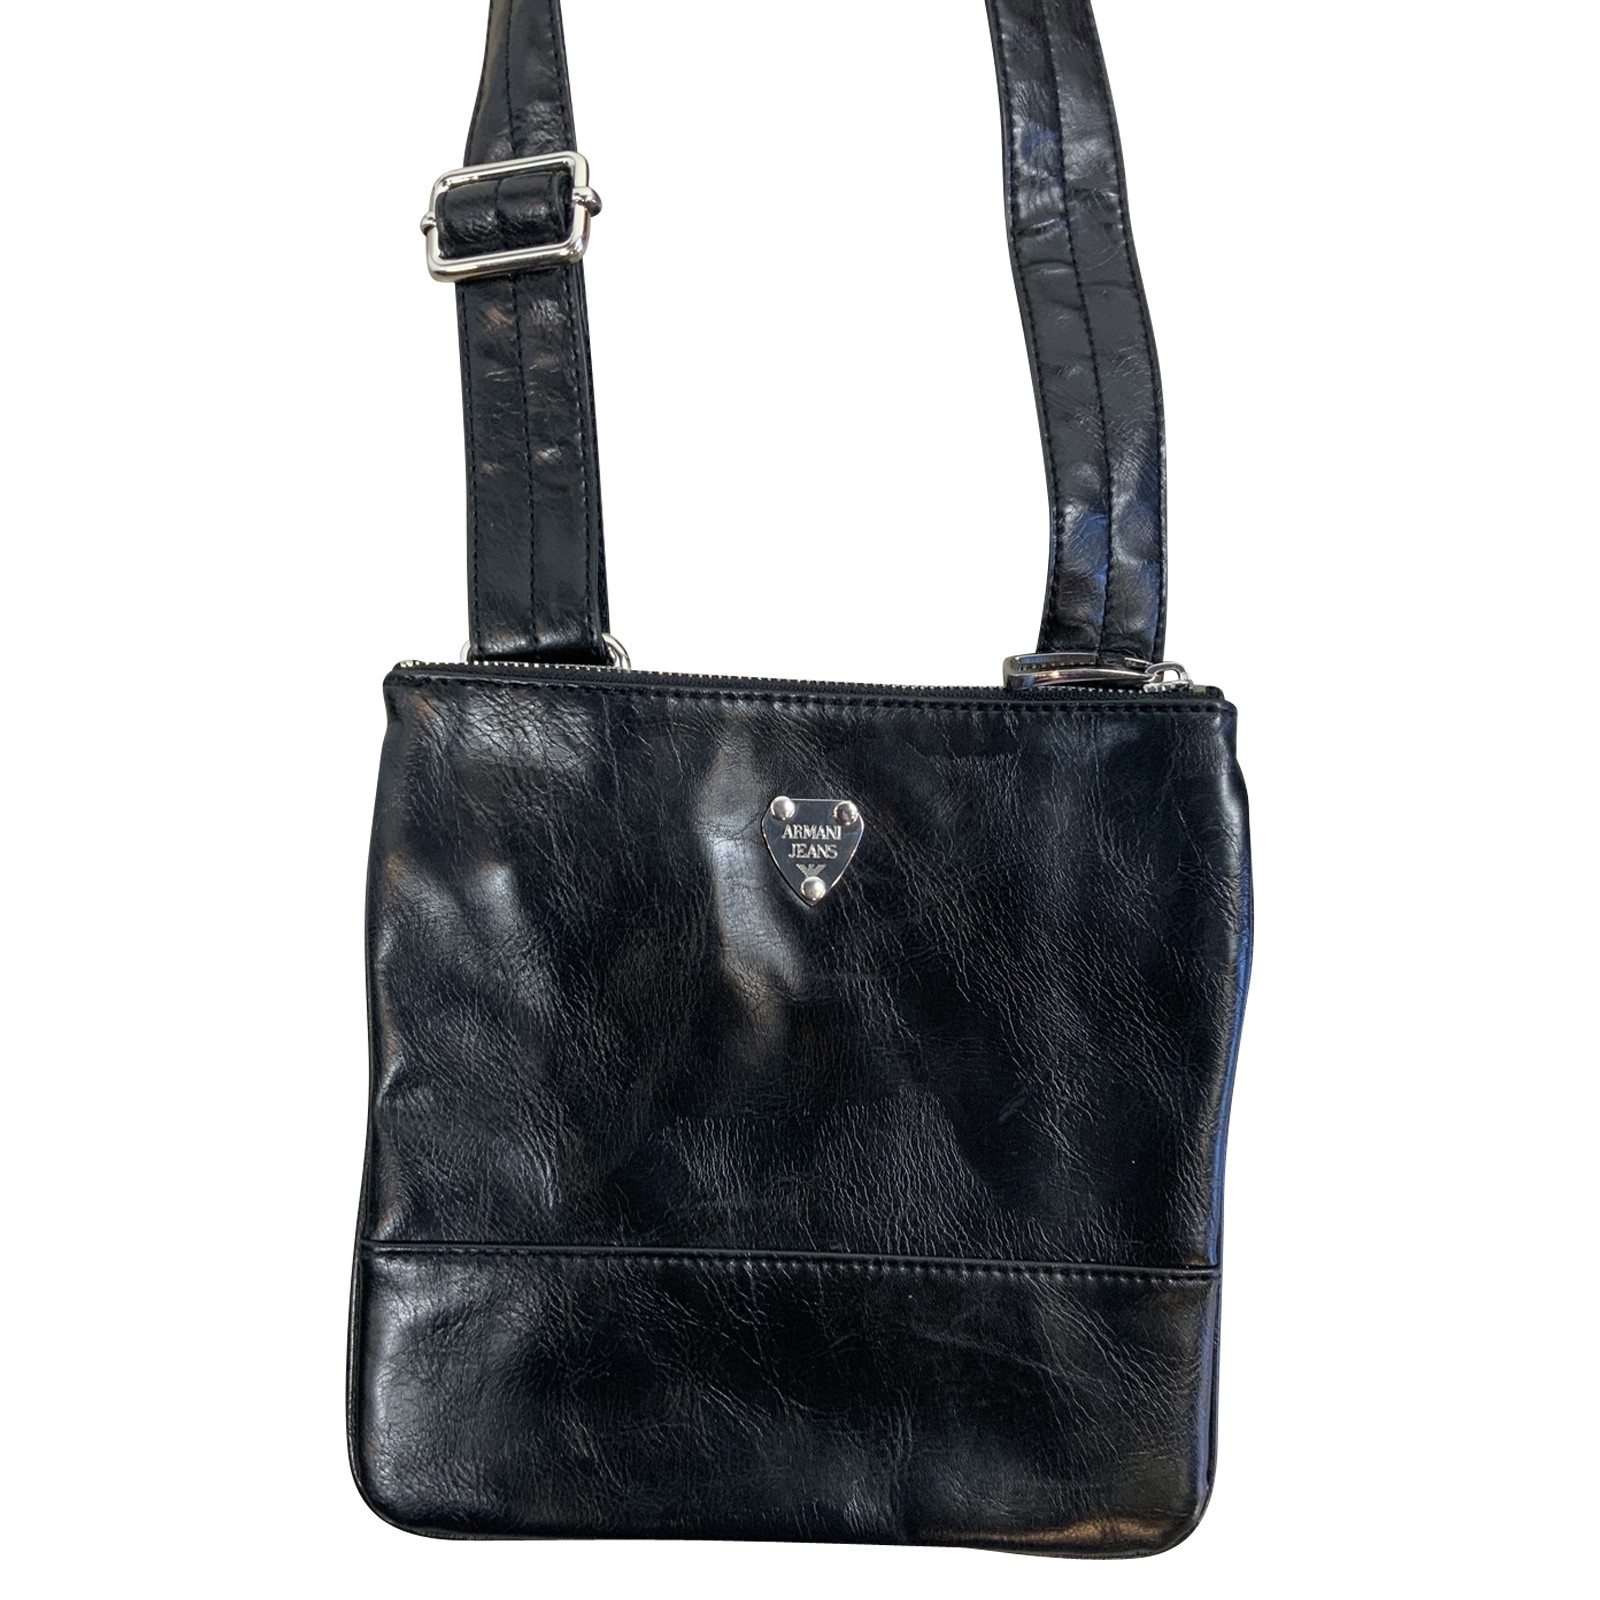 Armani Jeans Shoulder bag in Black - Second Hand Armani Jeans Shoulder bag  in Black buy used for 110€ (7772866)